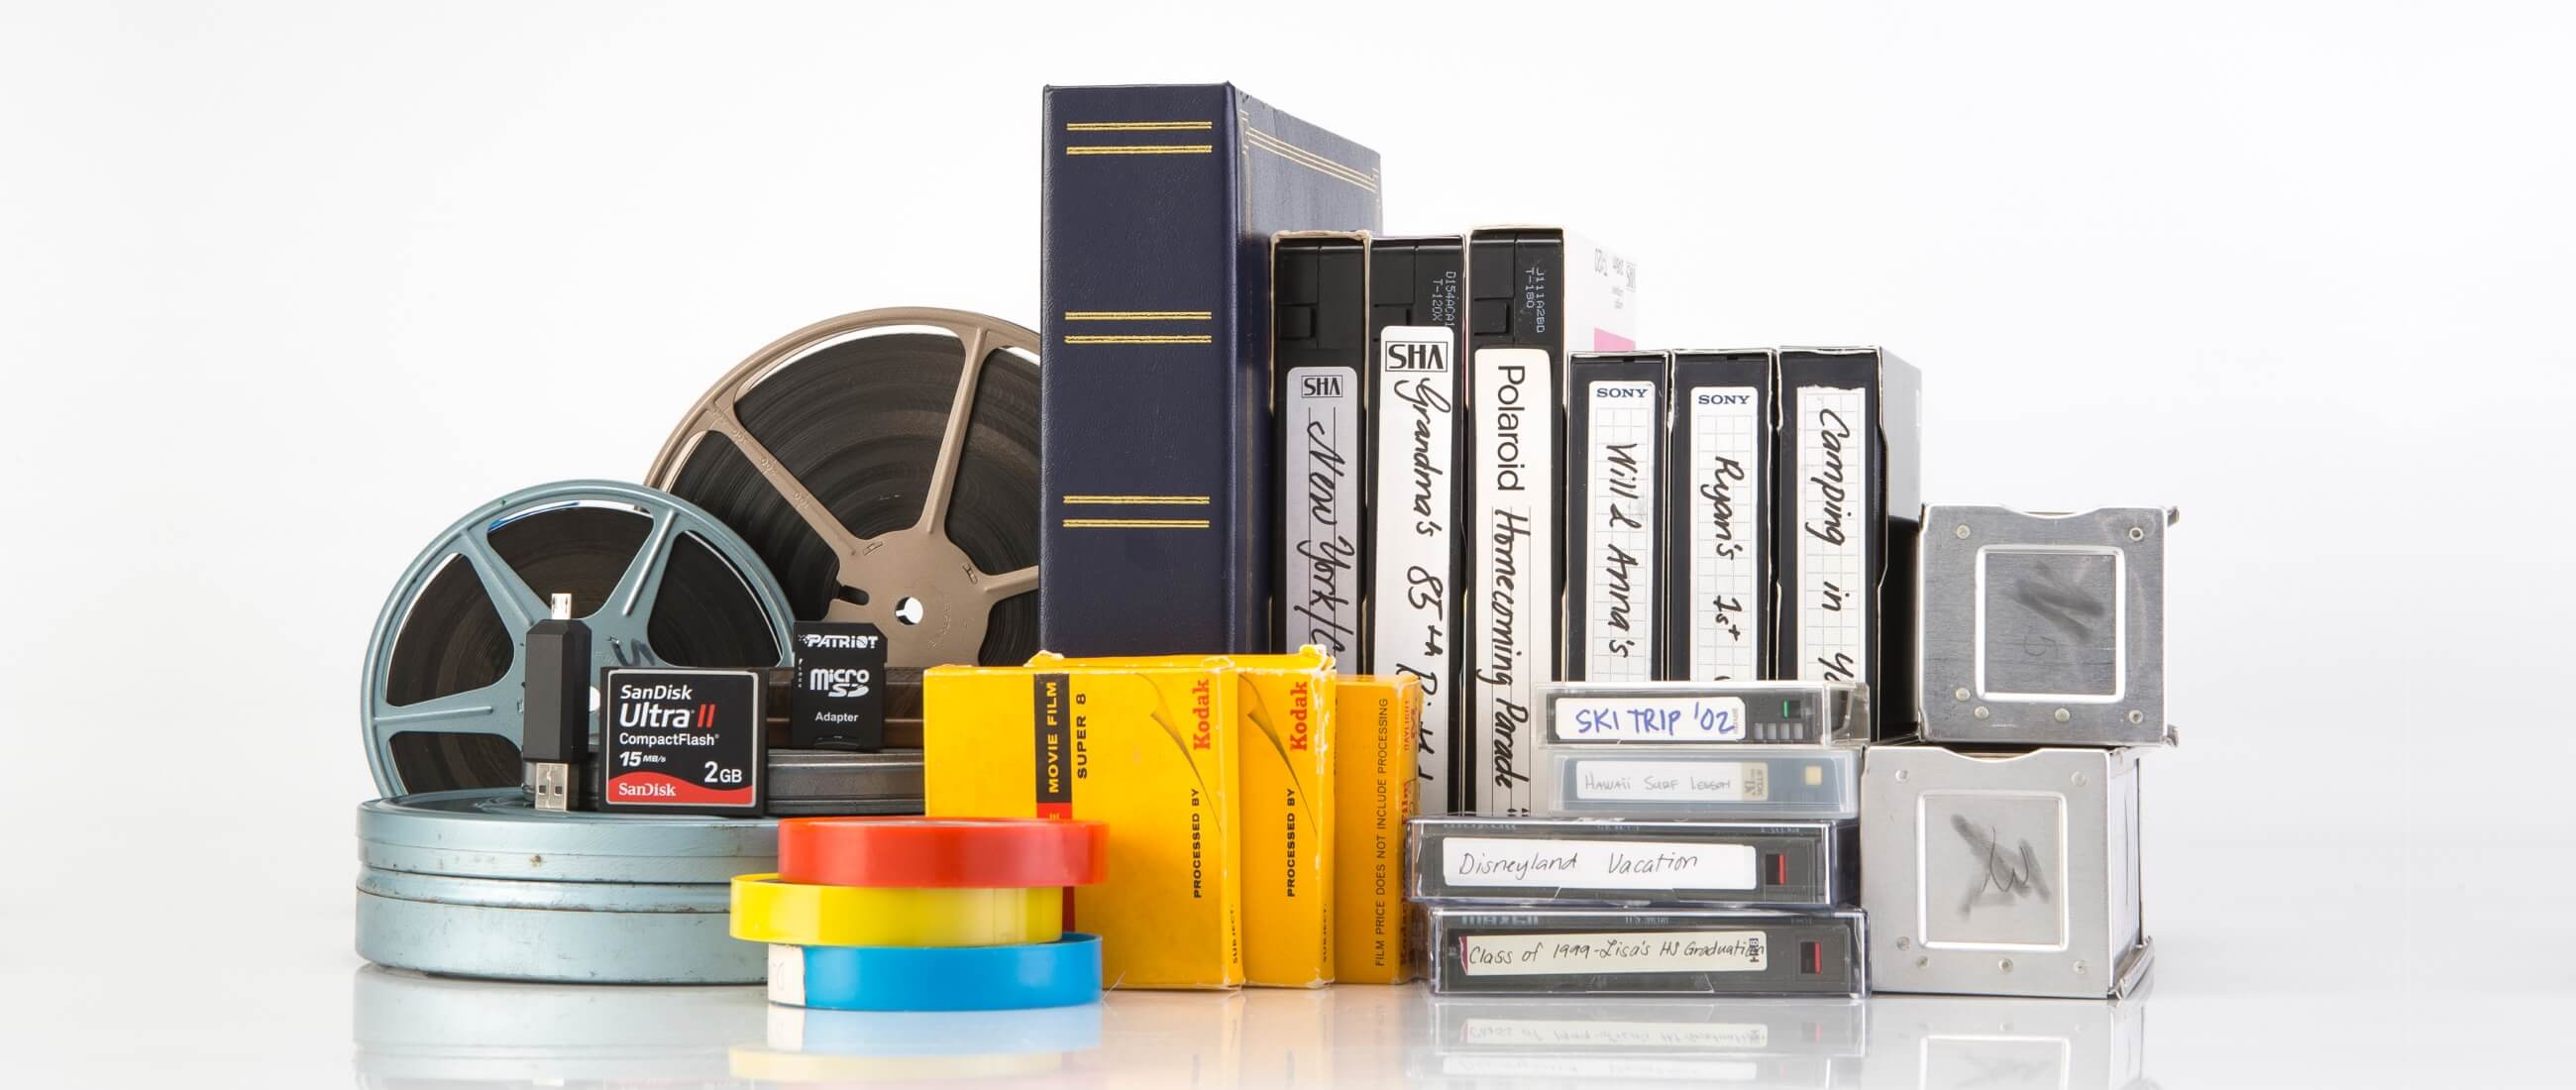 Kodak 8mm Film Scanner - Professional Scan Service v Kodak Reels 2  digitiser 